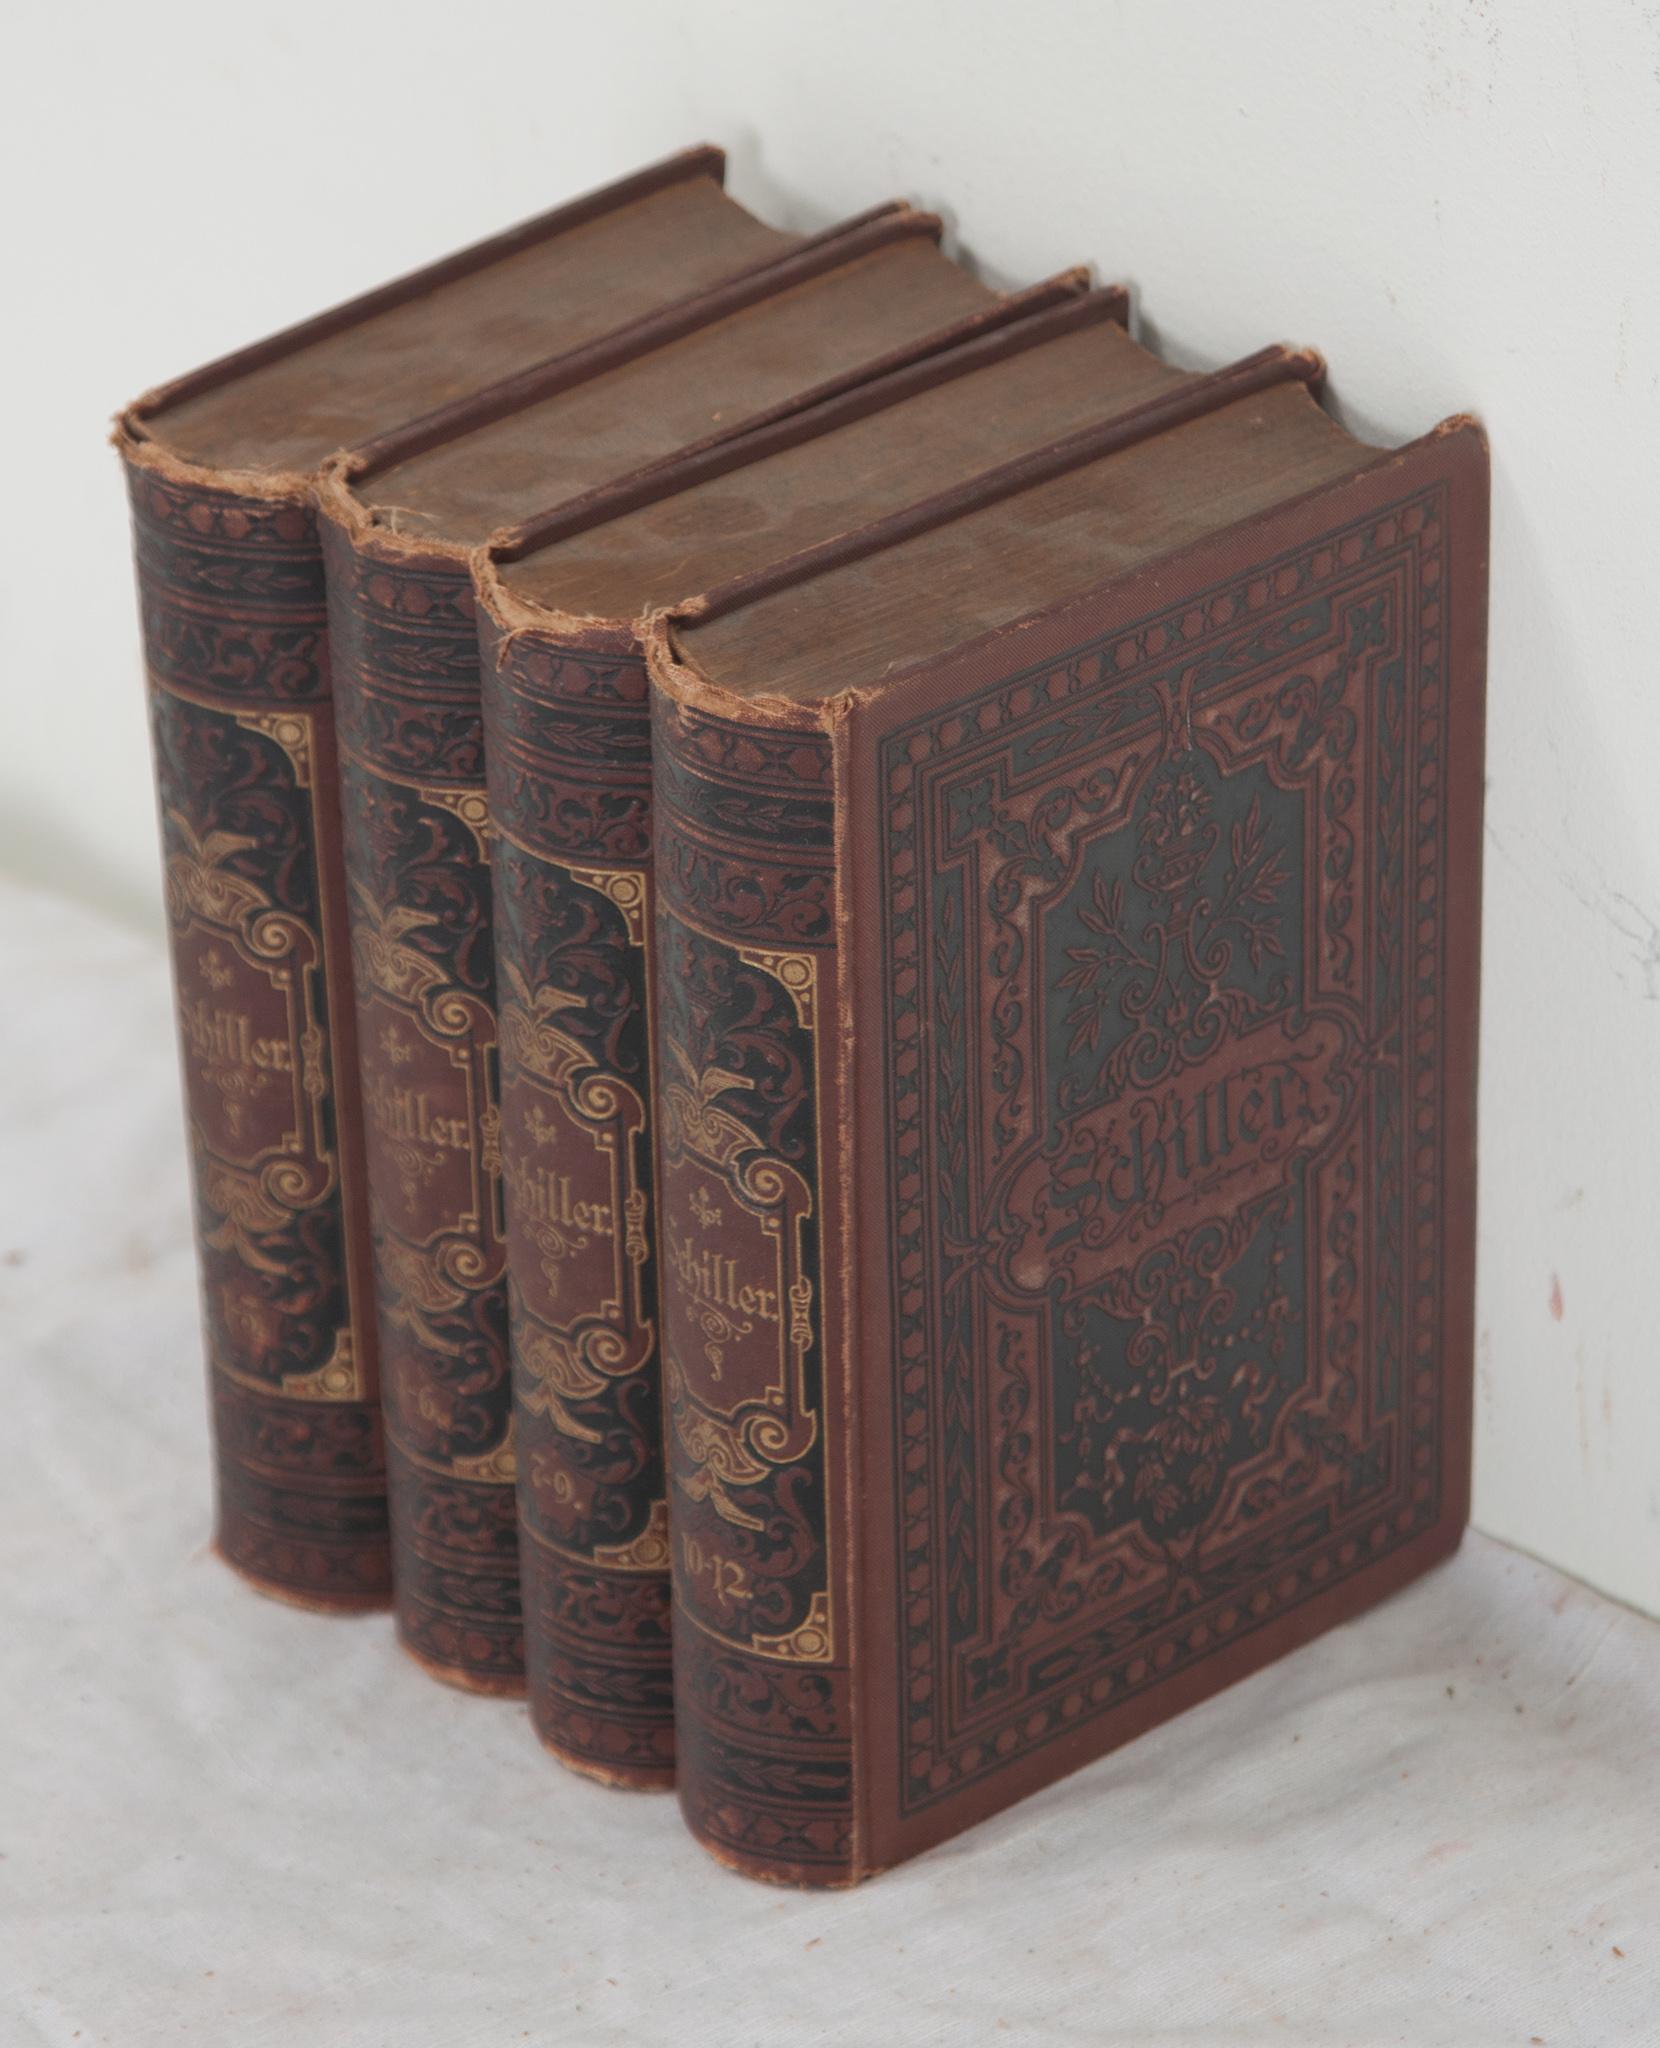 Hand-Crafted Set of 4 Books by German Poet Friedrich von Schiller For Sale